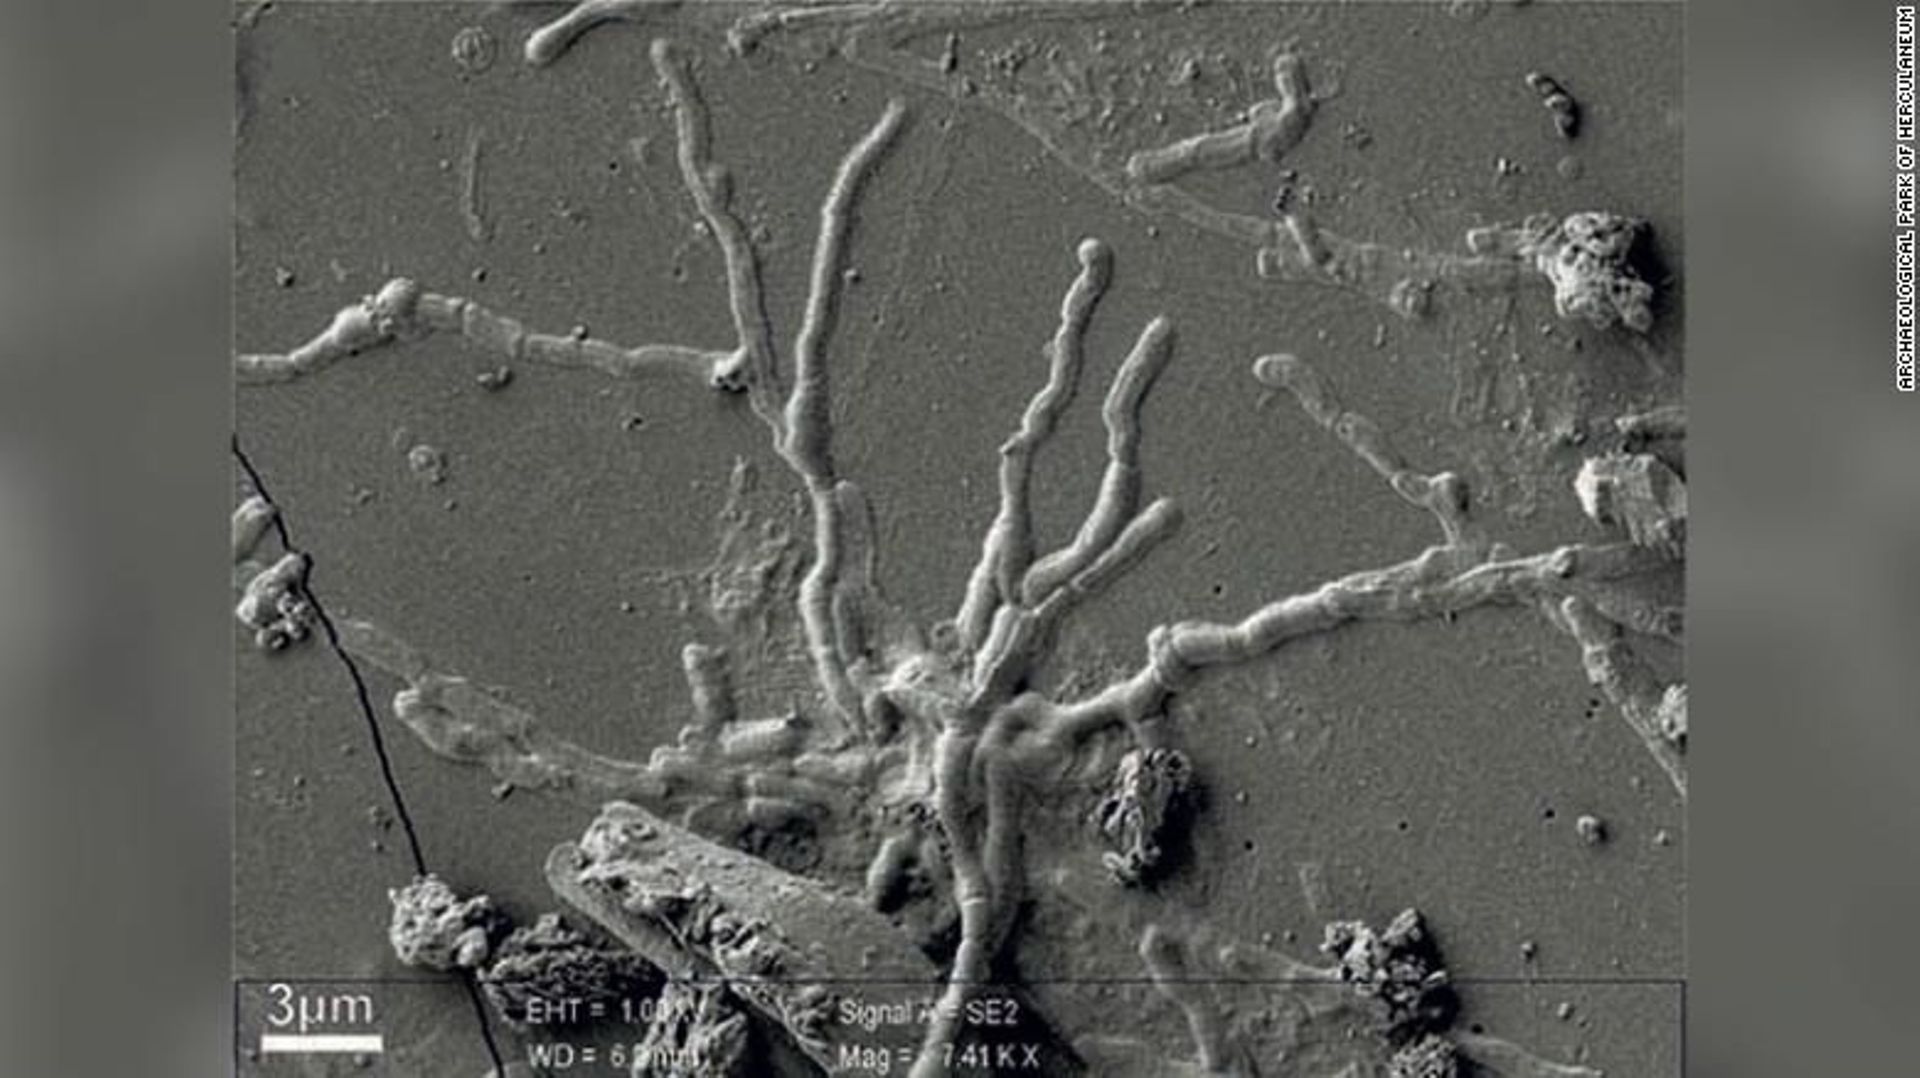 des-cellules-cerebrales-intactes-dans-le-crane-d-un-homme-tue-dans-l-eruption-du-vesuve-il-y-a-2000-ans